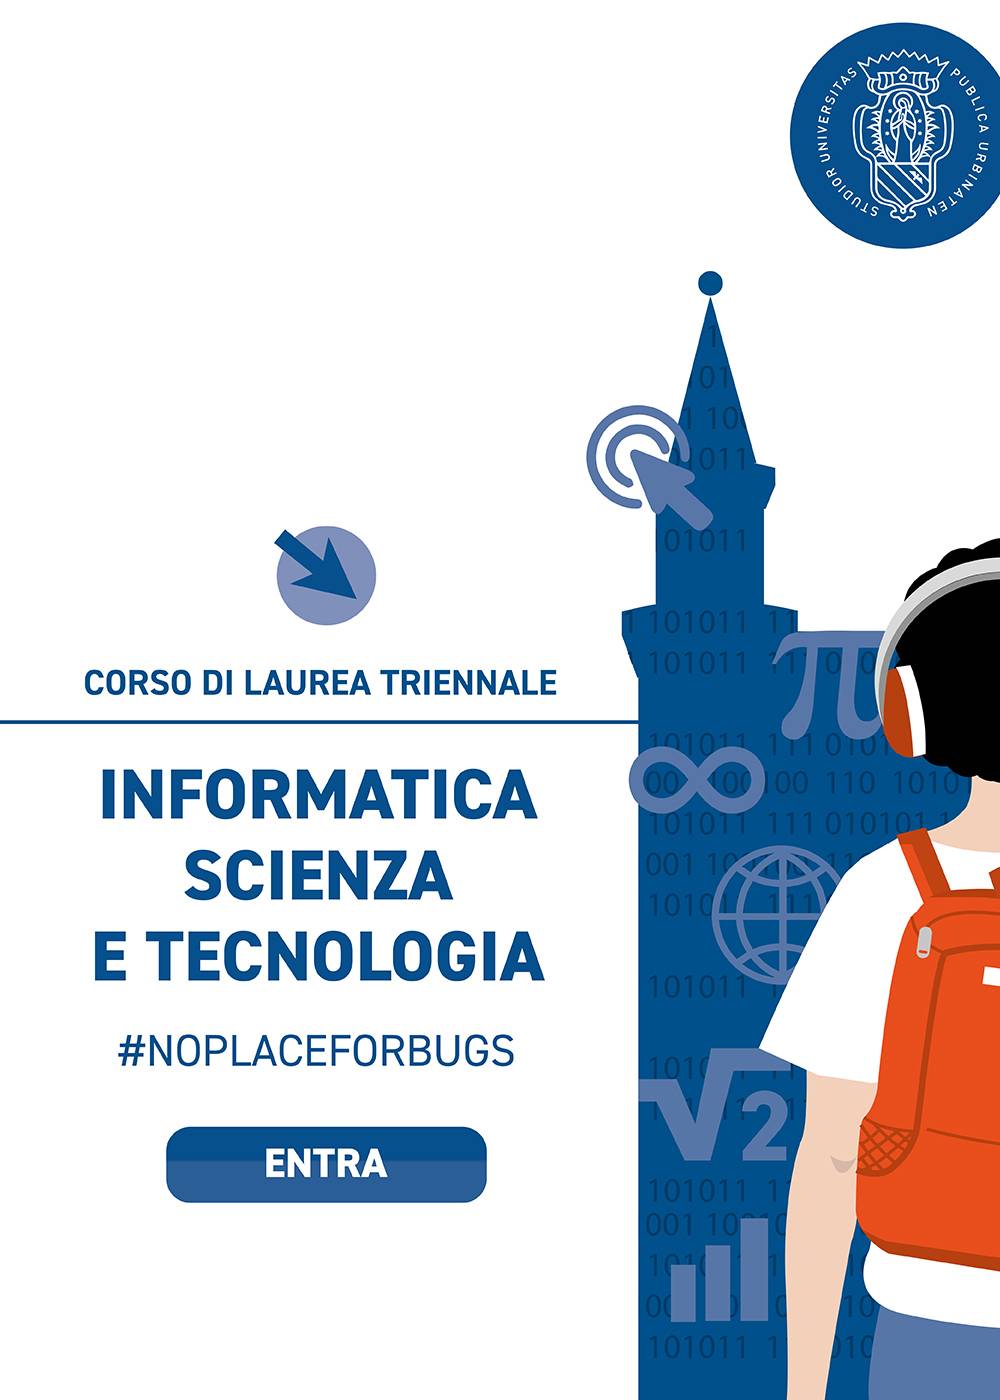 Corso di Laurea Triennale in Informatica - Scienza e Tecnologia